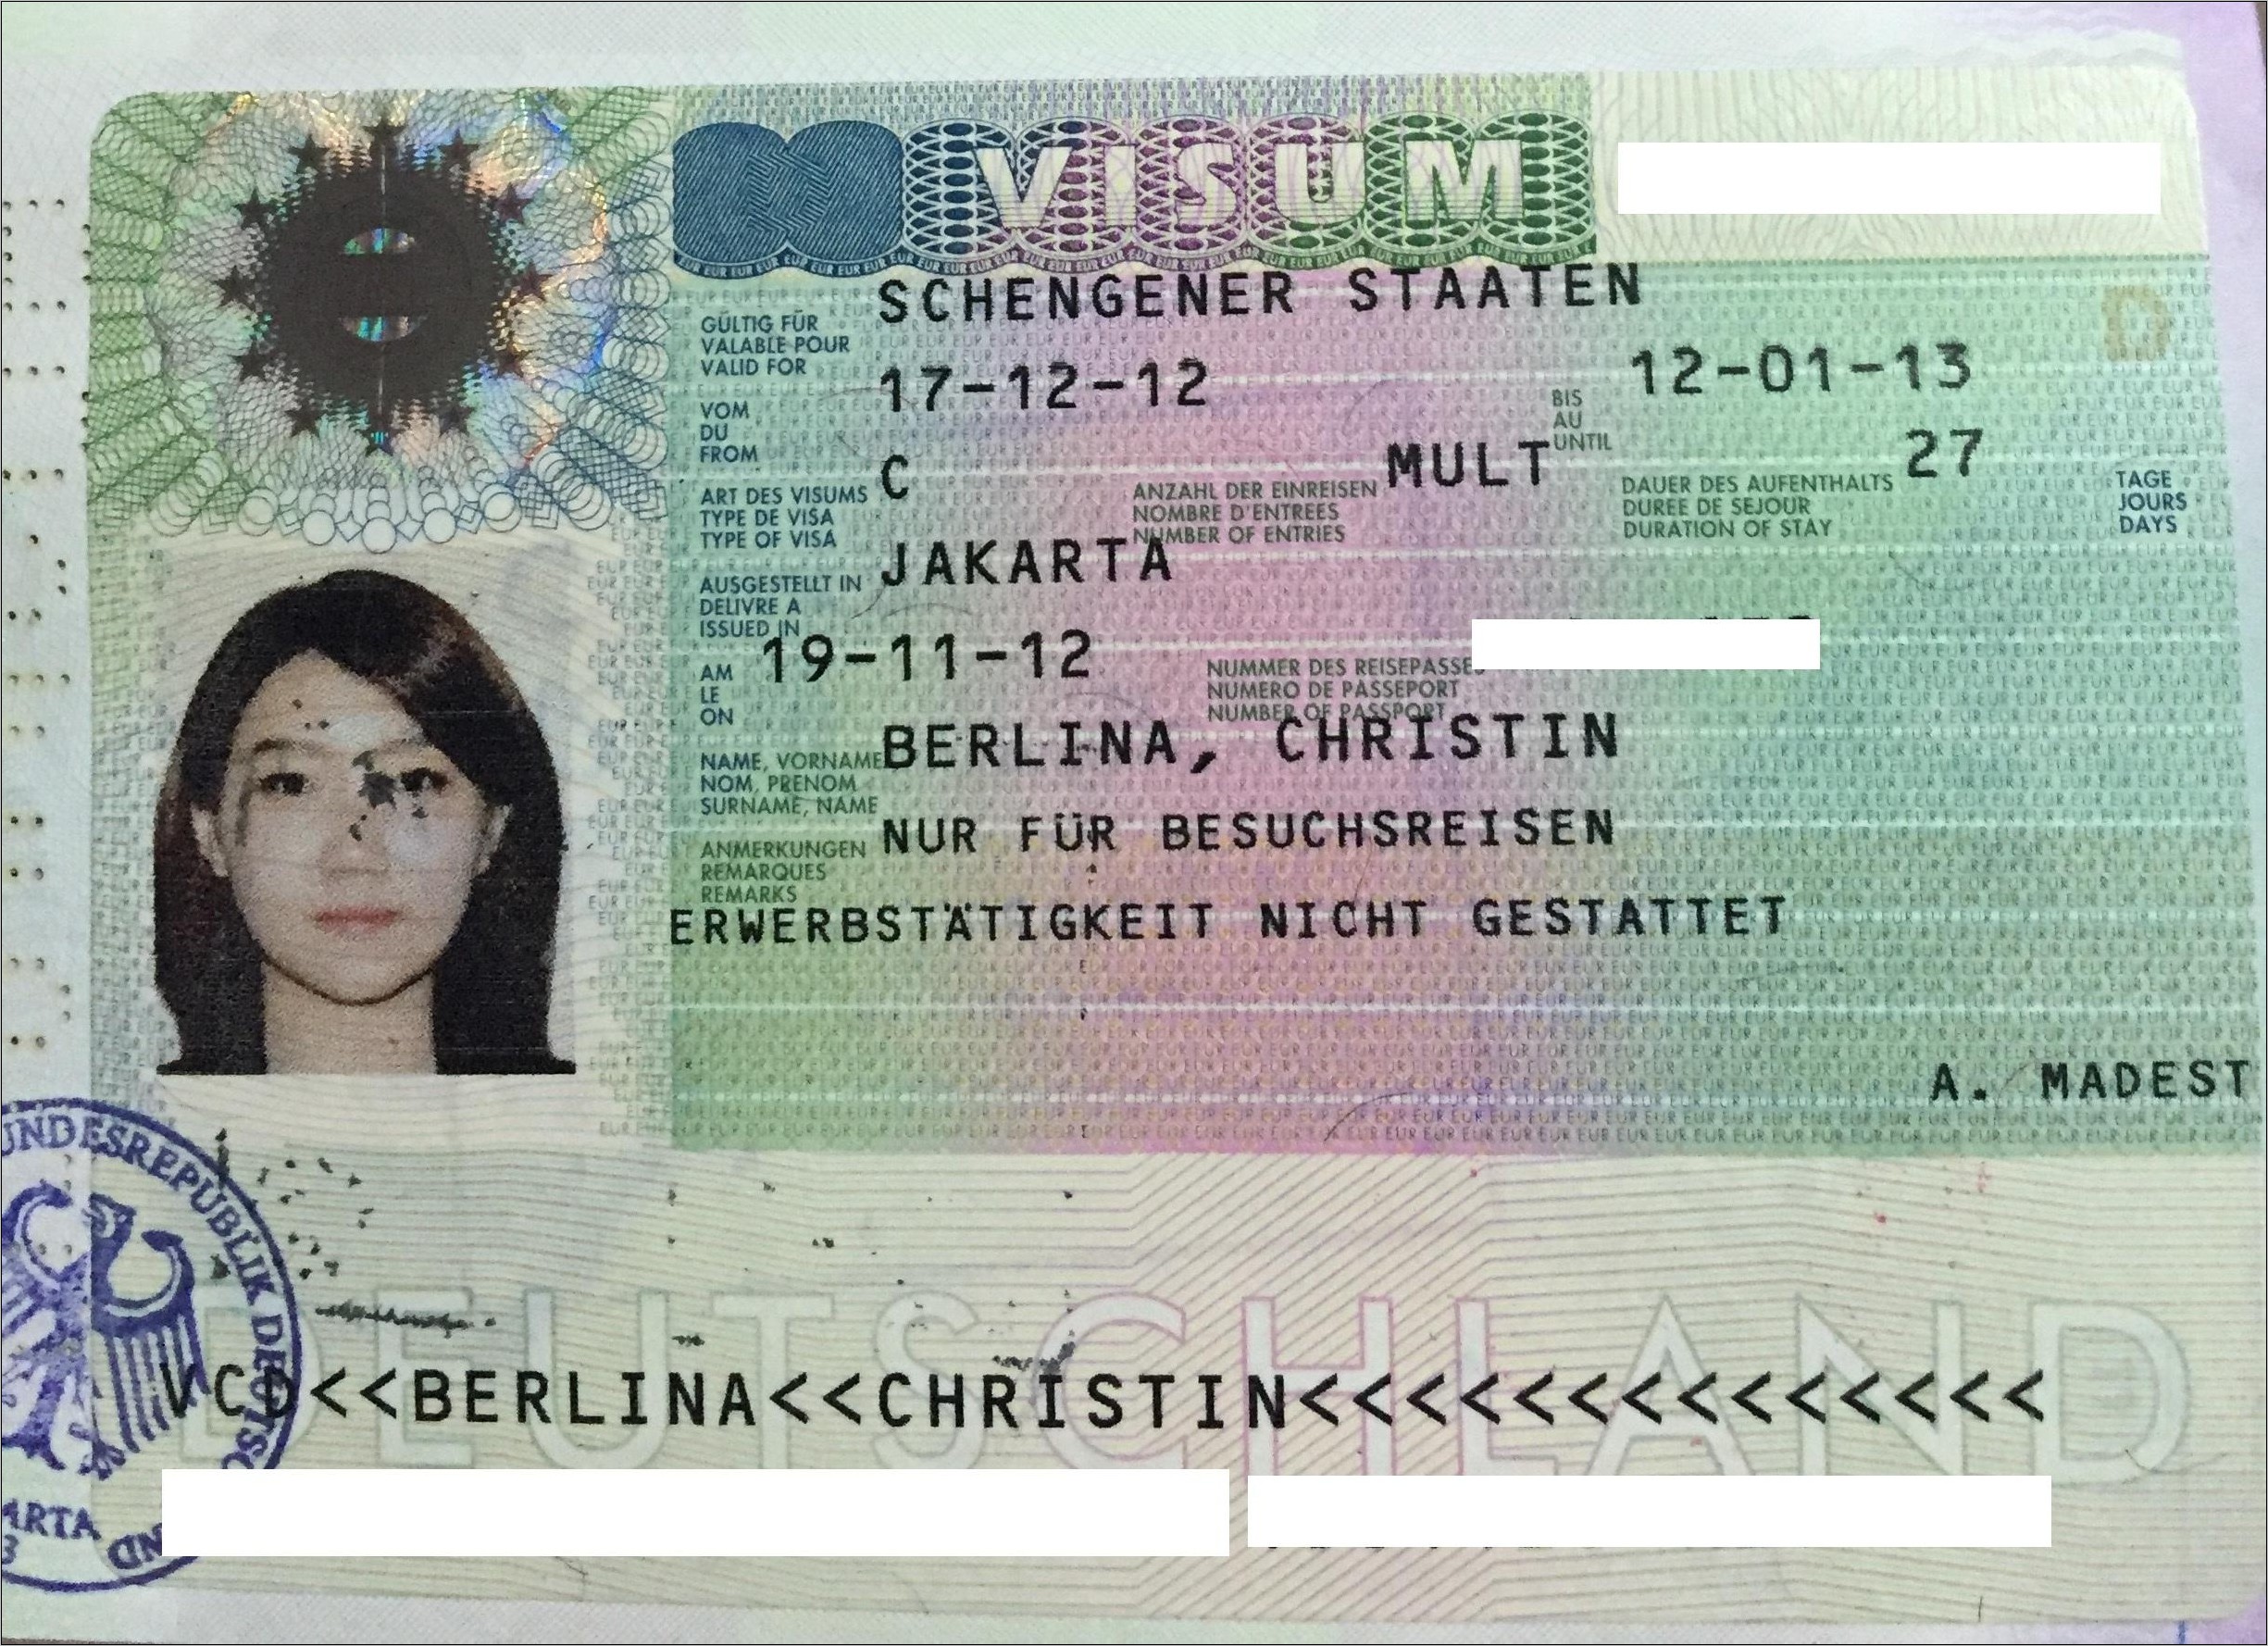 Contoh Surat Keterangan Kerja Untuk Visa Schengen Excel